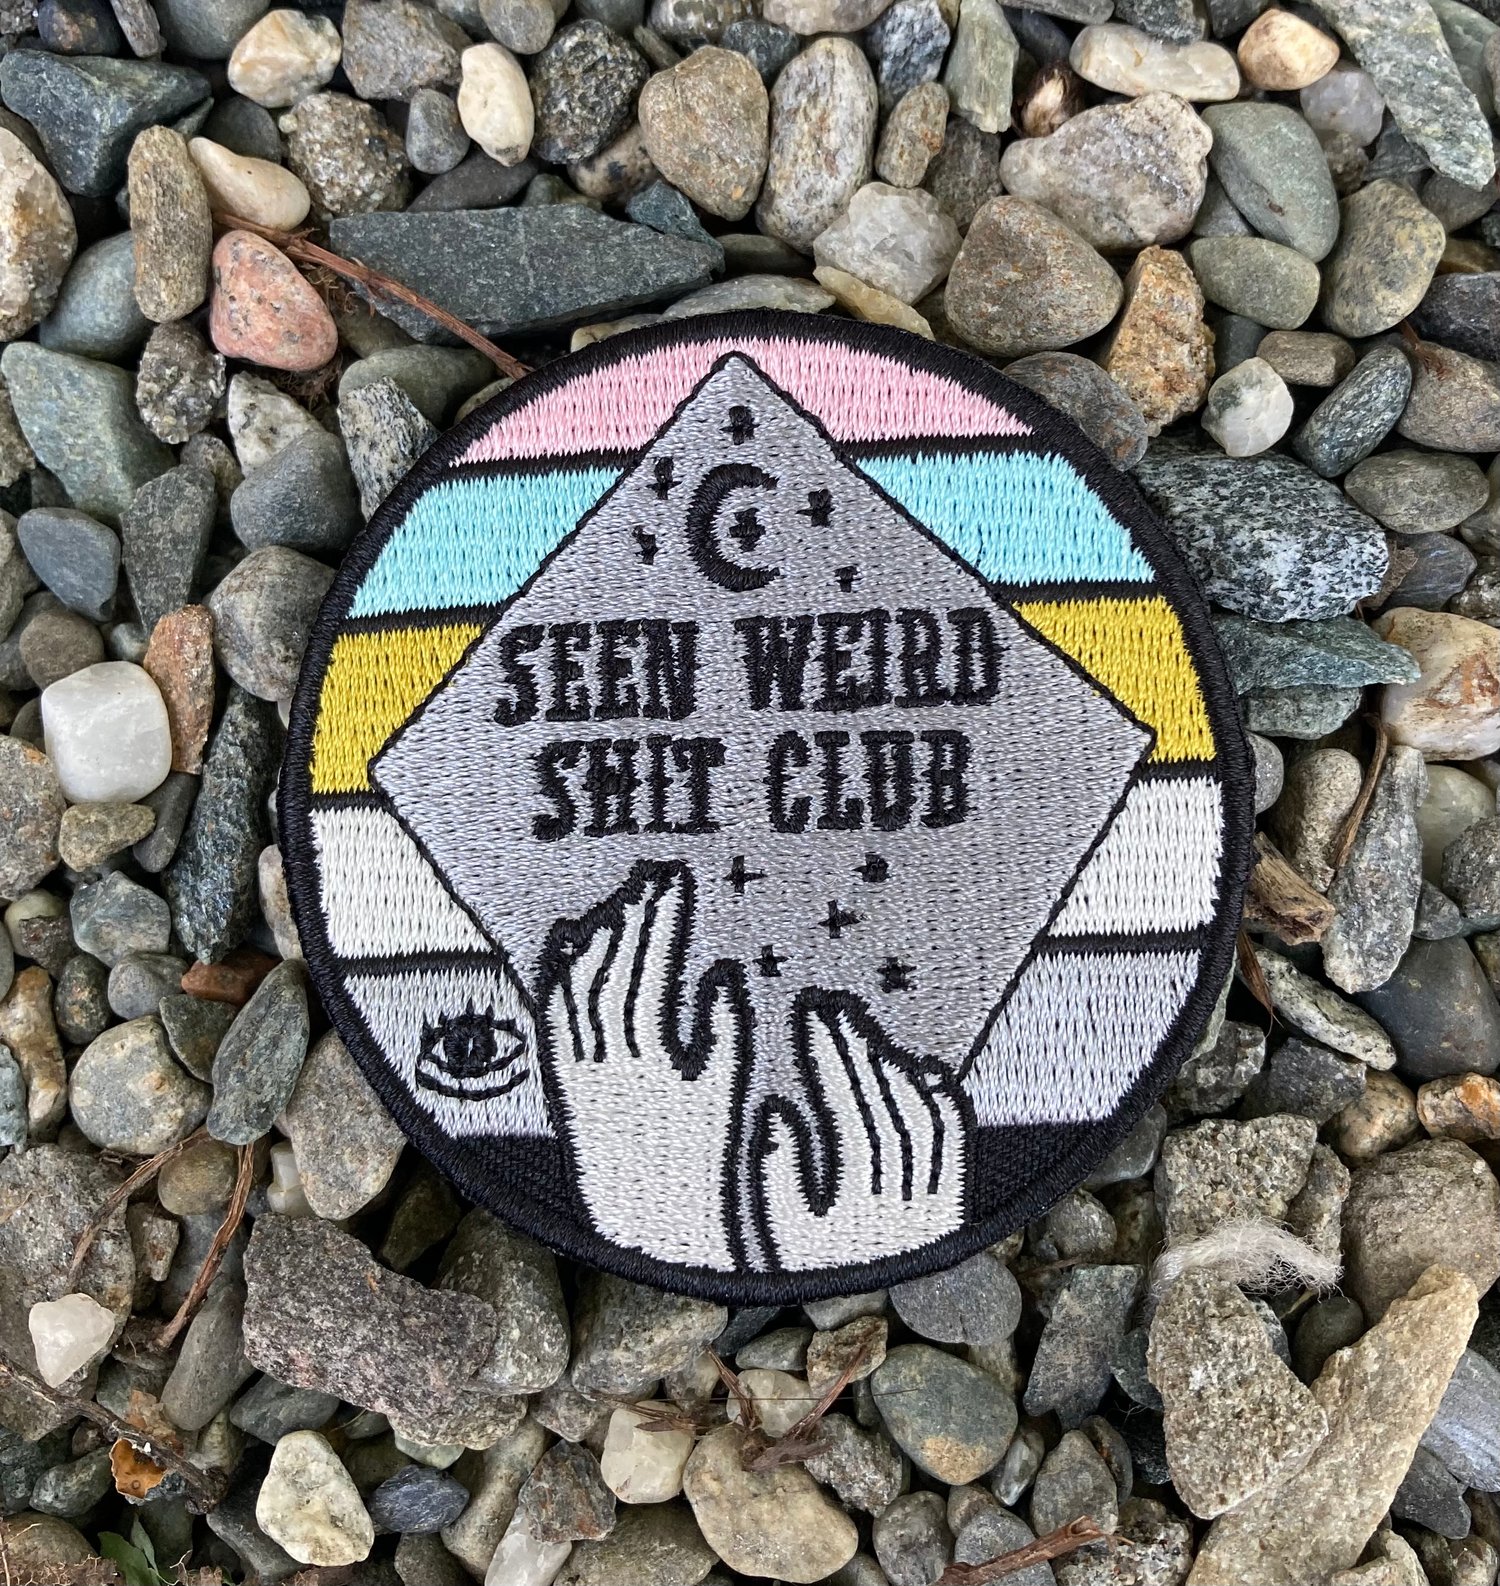 Seen Weird Shit Club Patch 